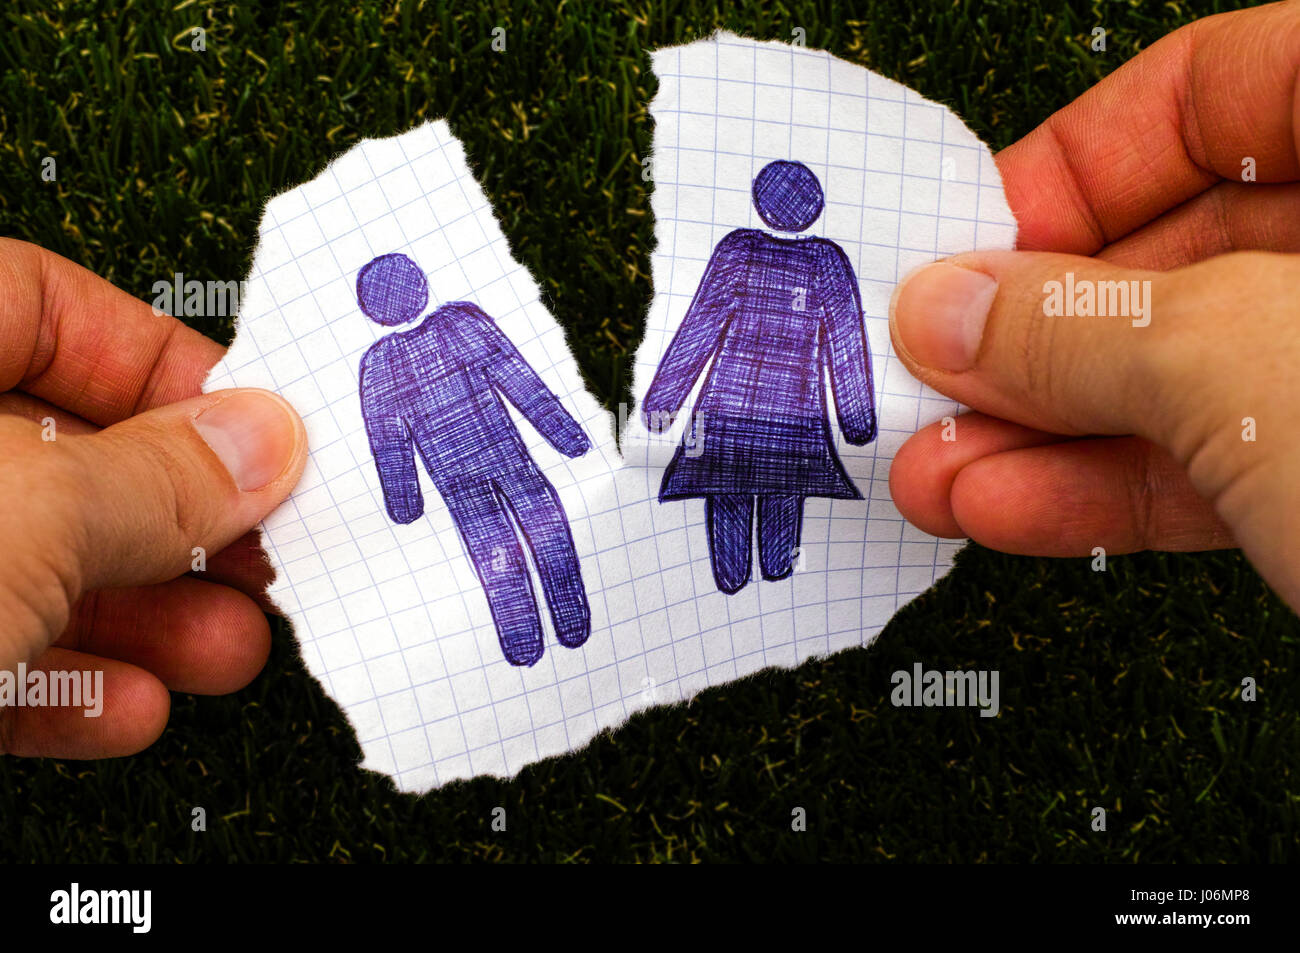 Personne mains déchirer bout de papier à la main avec l'homme et de la femme. Arrière-plan de l'herbe. Doodle style. Banque D'Images